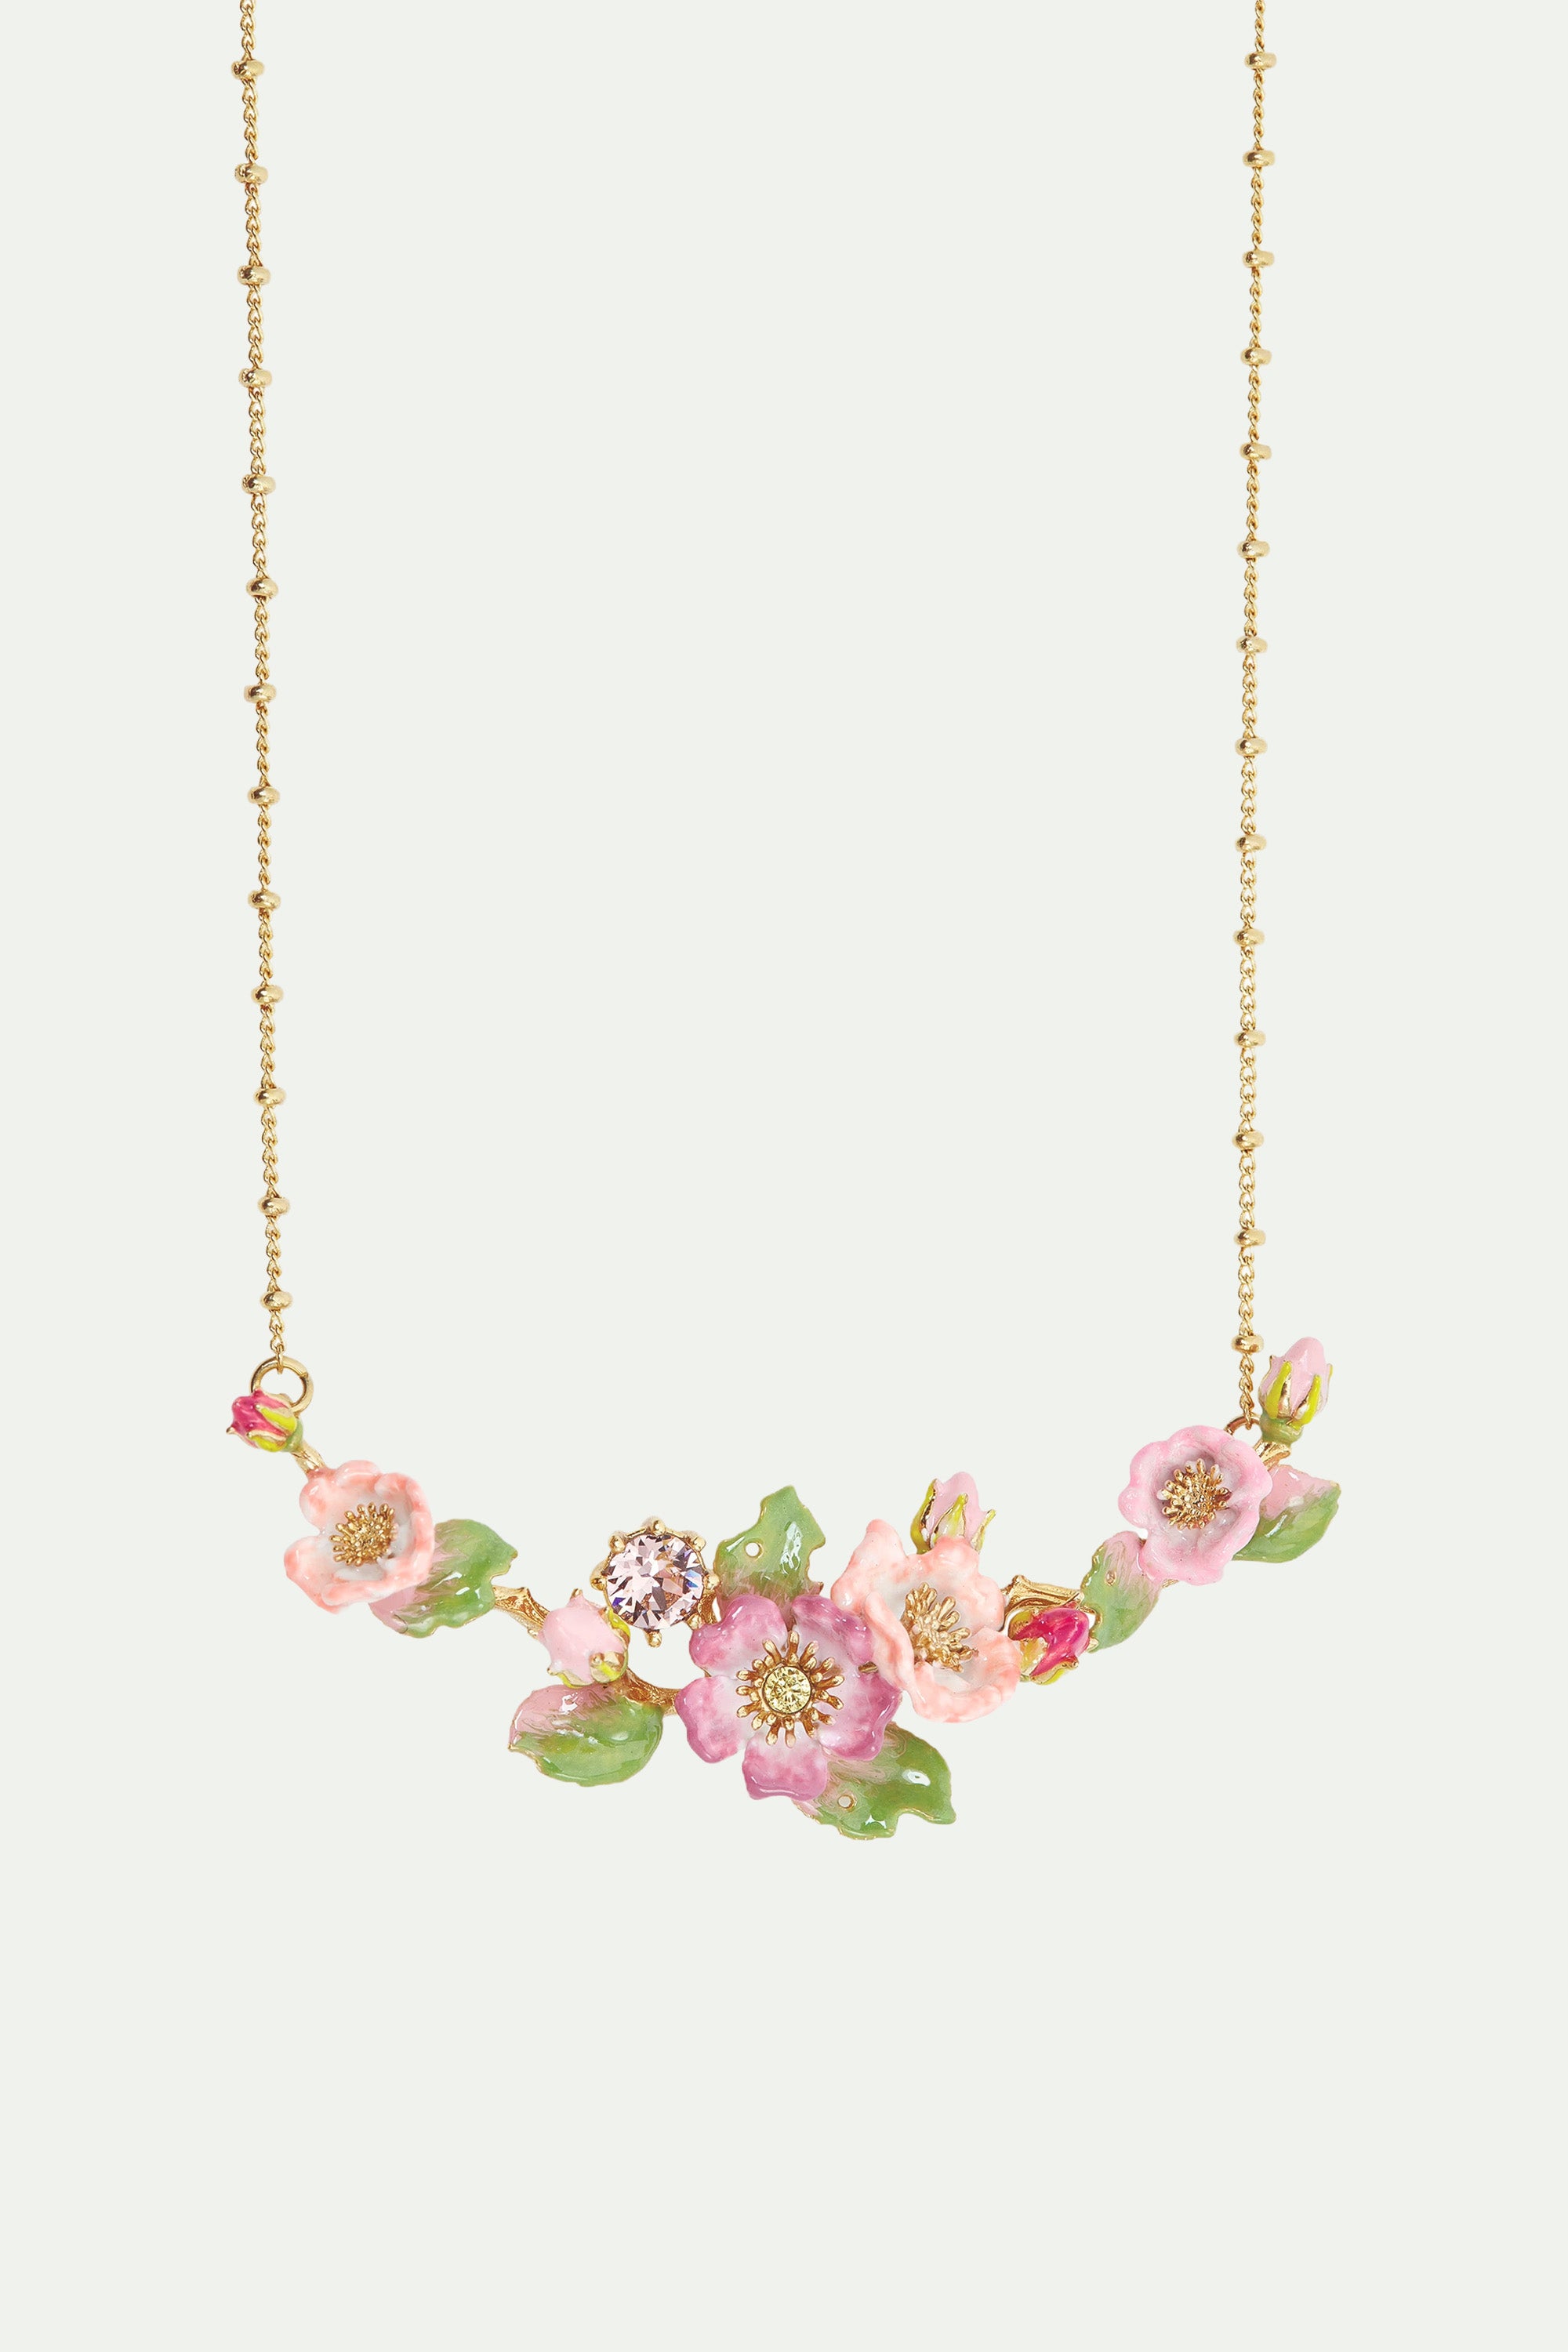 Wild rose and rosebush leaf statement necklace